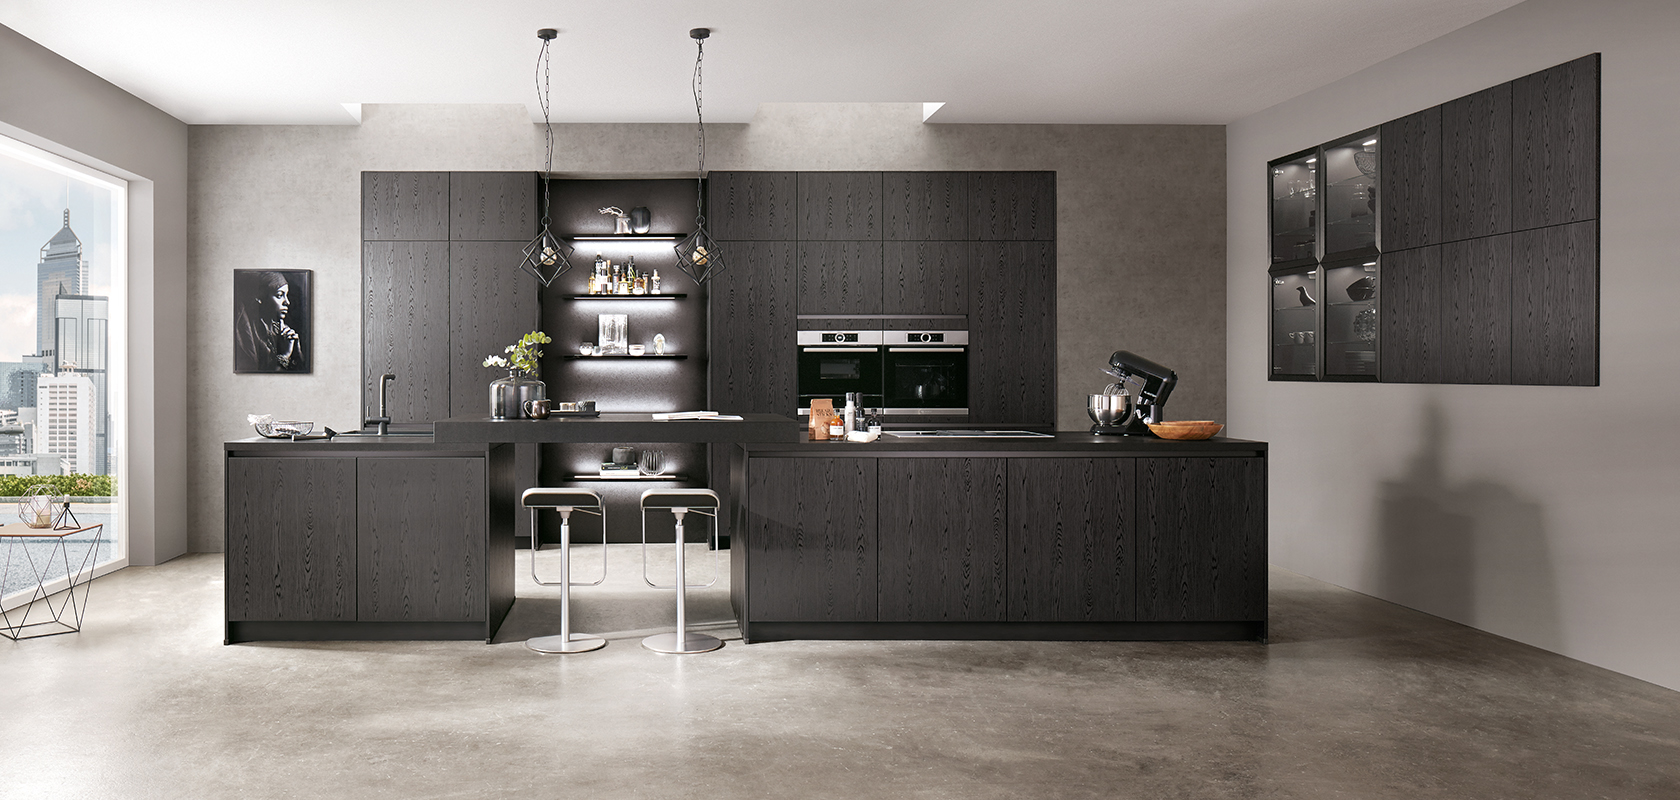 Design moderno della cucina con eleganti mobili neri, elettrodomestici in acciaio inossidabile e un'isola centrale con sgabelli da bar su uno sfondo di texture in cemento grigio.